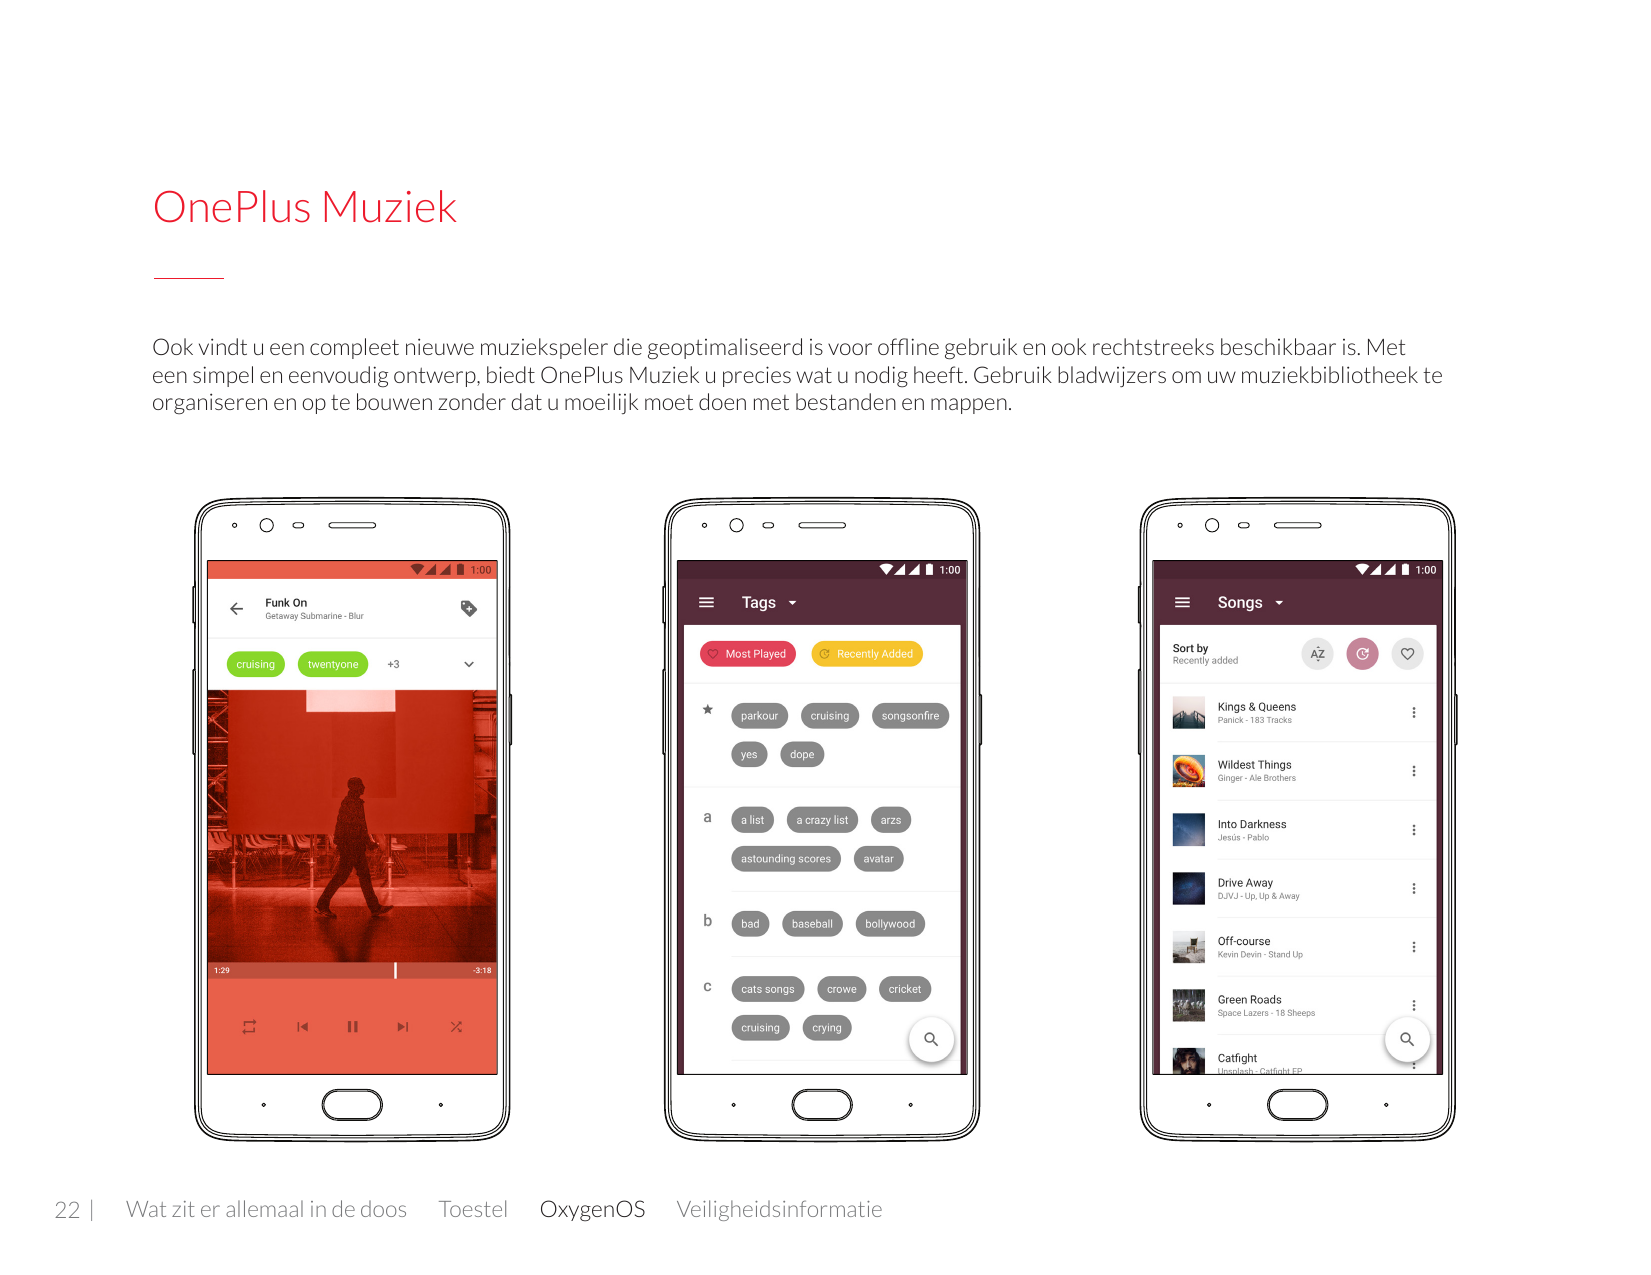 OnePlus MuziekOok vindt u een compleet nieuwe muziekspeler die geoptimaliseerd is voor offline gebruik en ook rechtstreeks besch